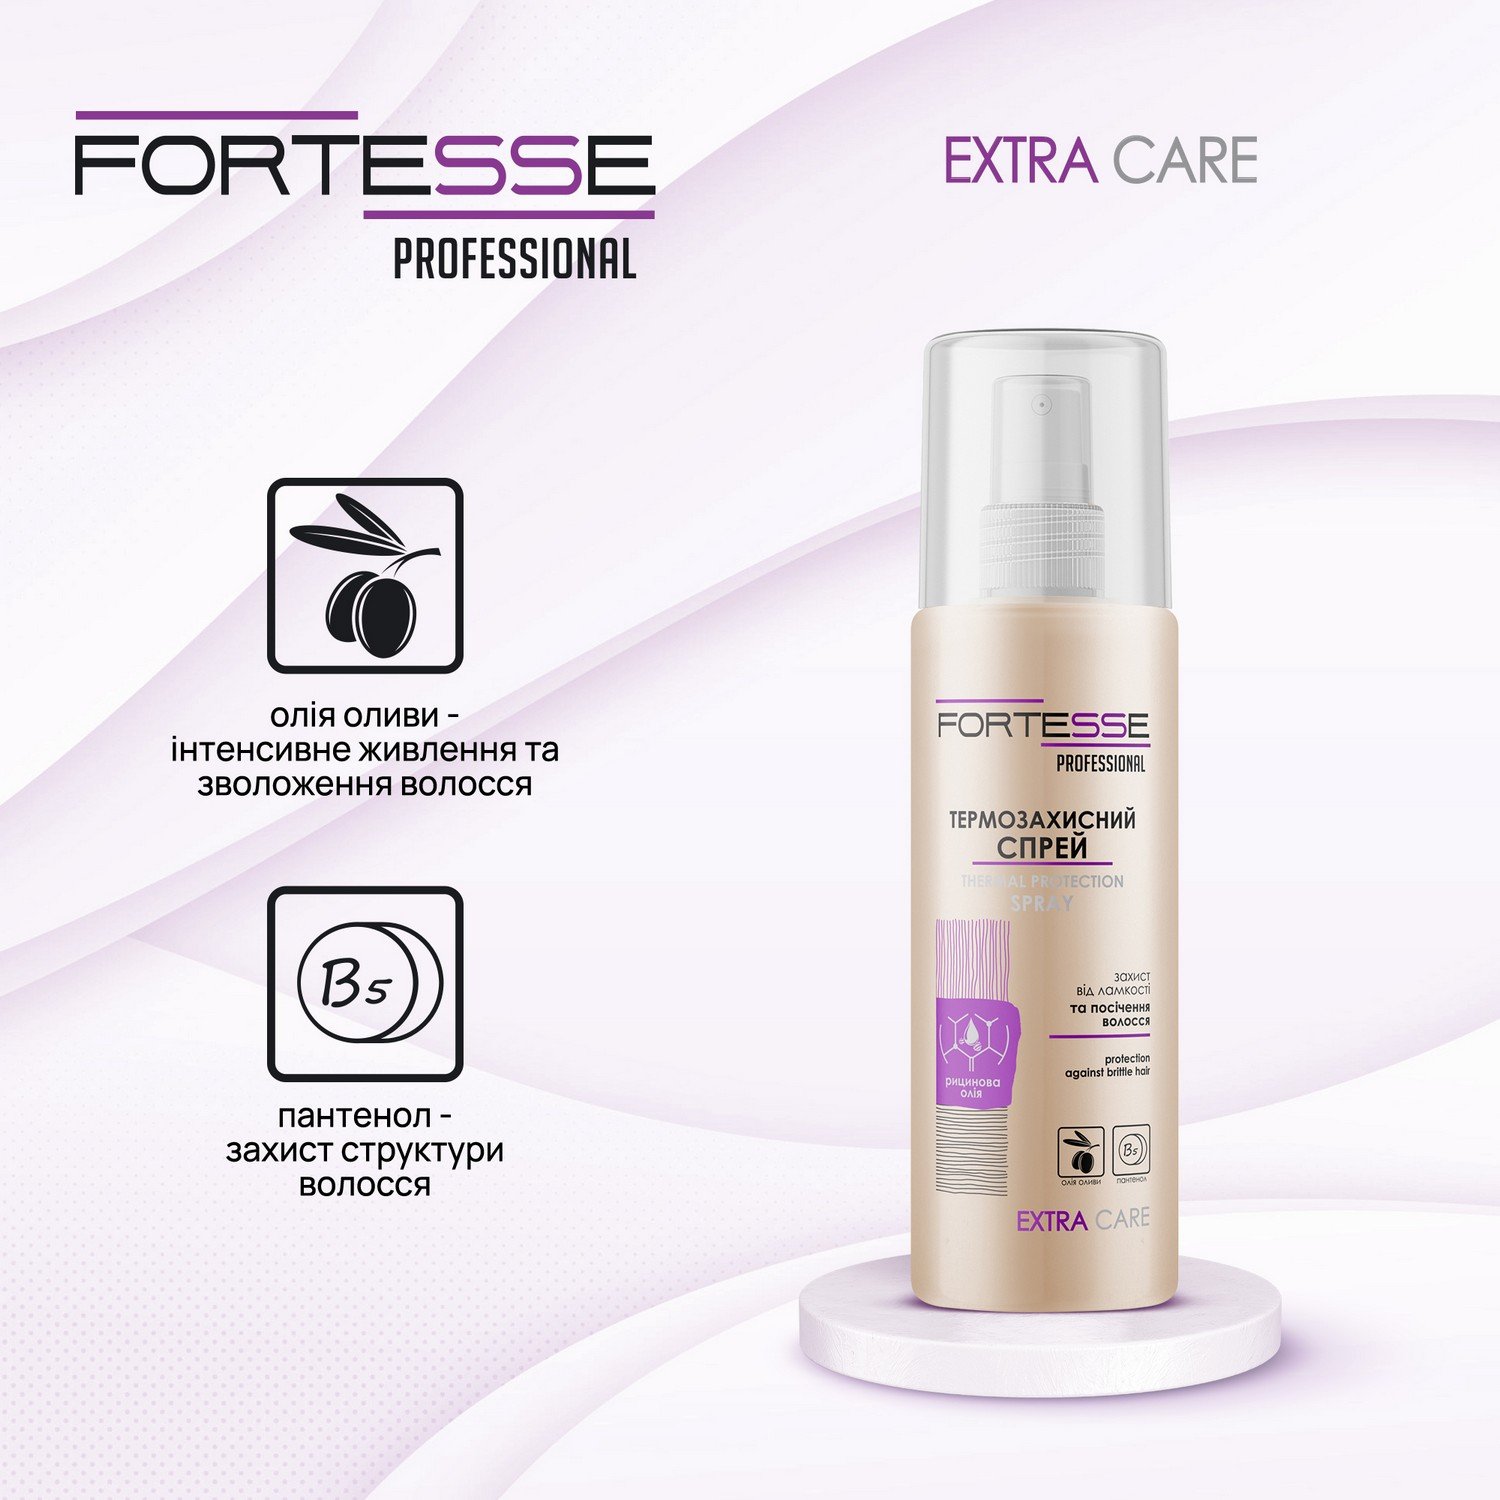 Термозащитный спрей Fortesse Professional Extra Care, защита от ломкости и секущихся волос, 150 мл - фото 2